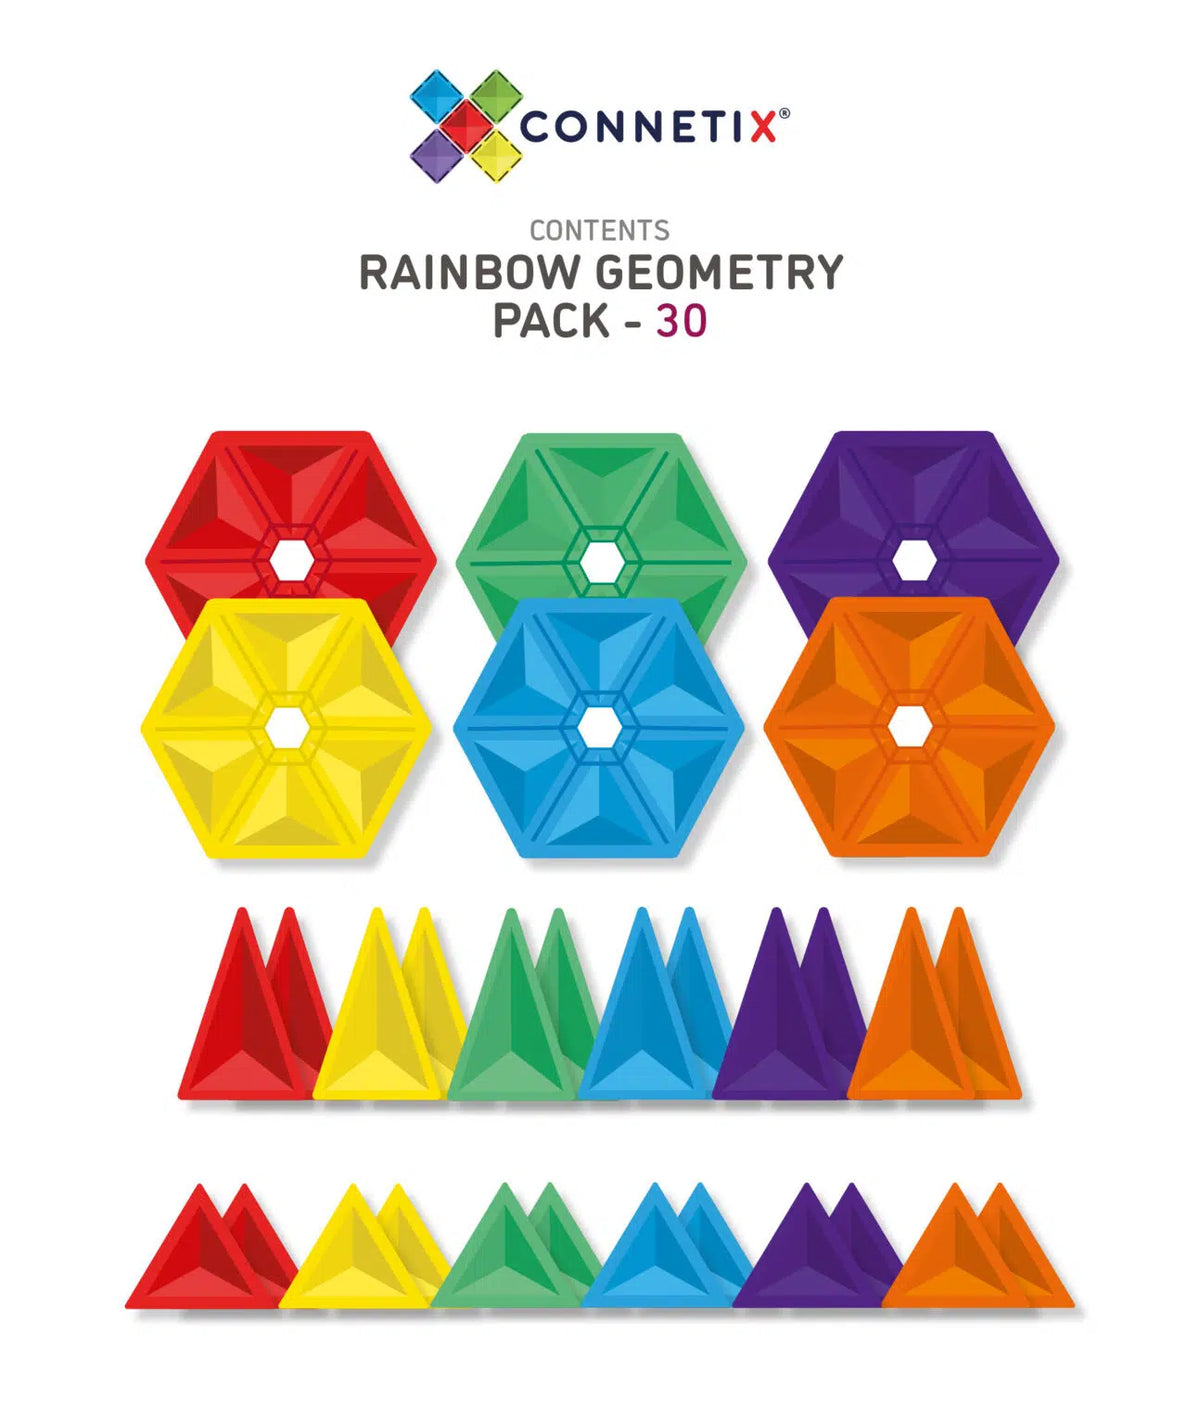 De Kinderwinkel Connetix Magnetic Tiles Geometry Pack